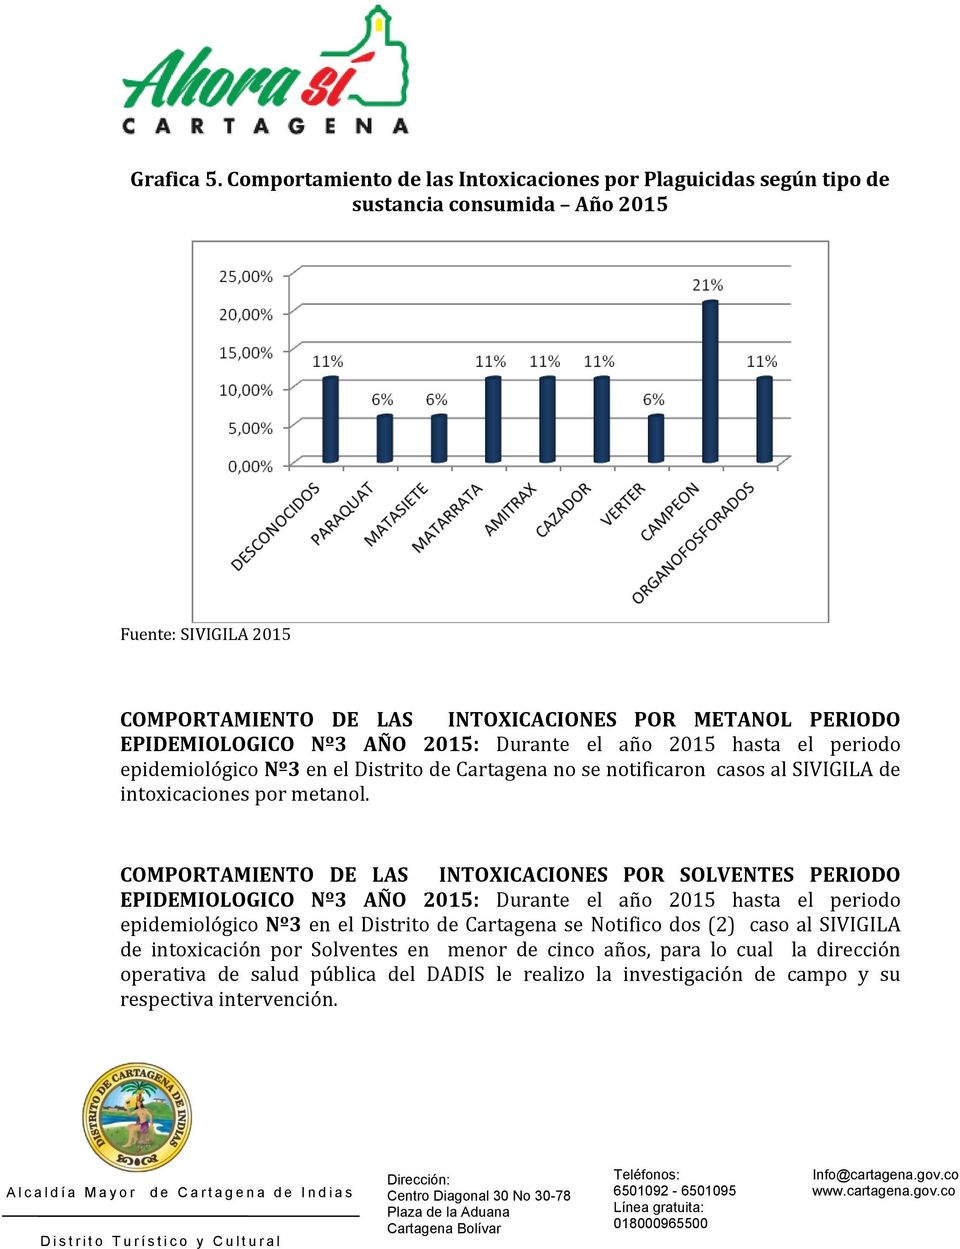 Durante el año 2015 hasta el periodo epidemiológico Nº3 en el Distrito de Cartagena no se notificaron casos al SIVIGILA de intoxicaciones por metanol.